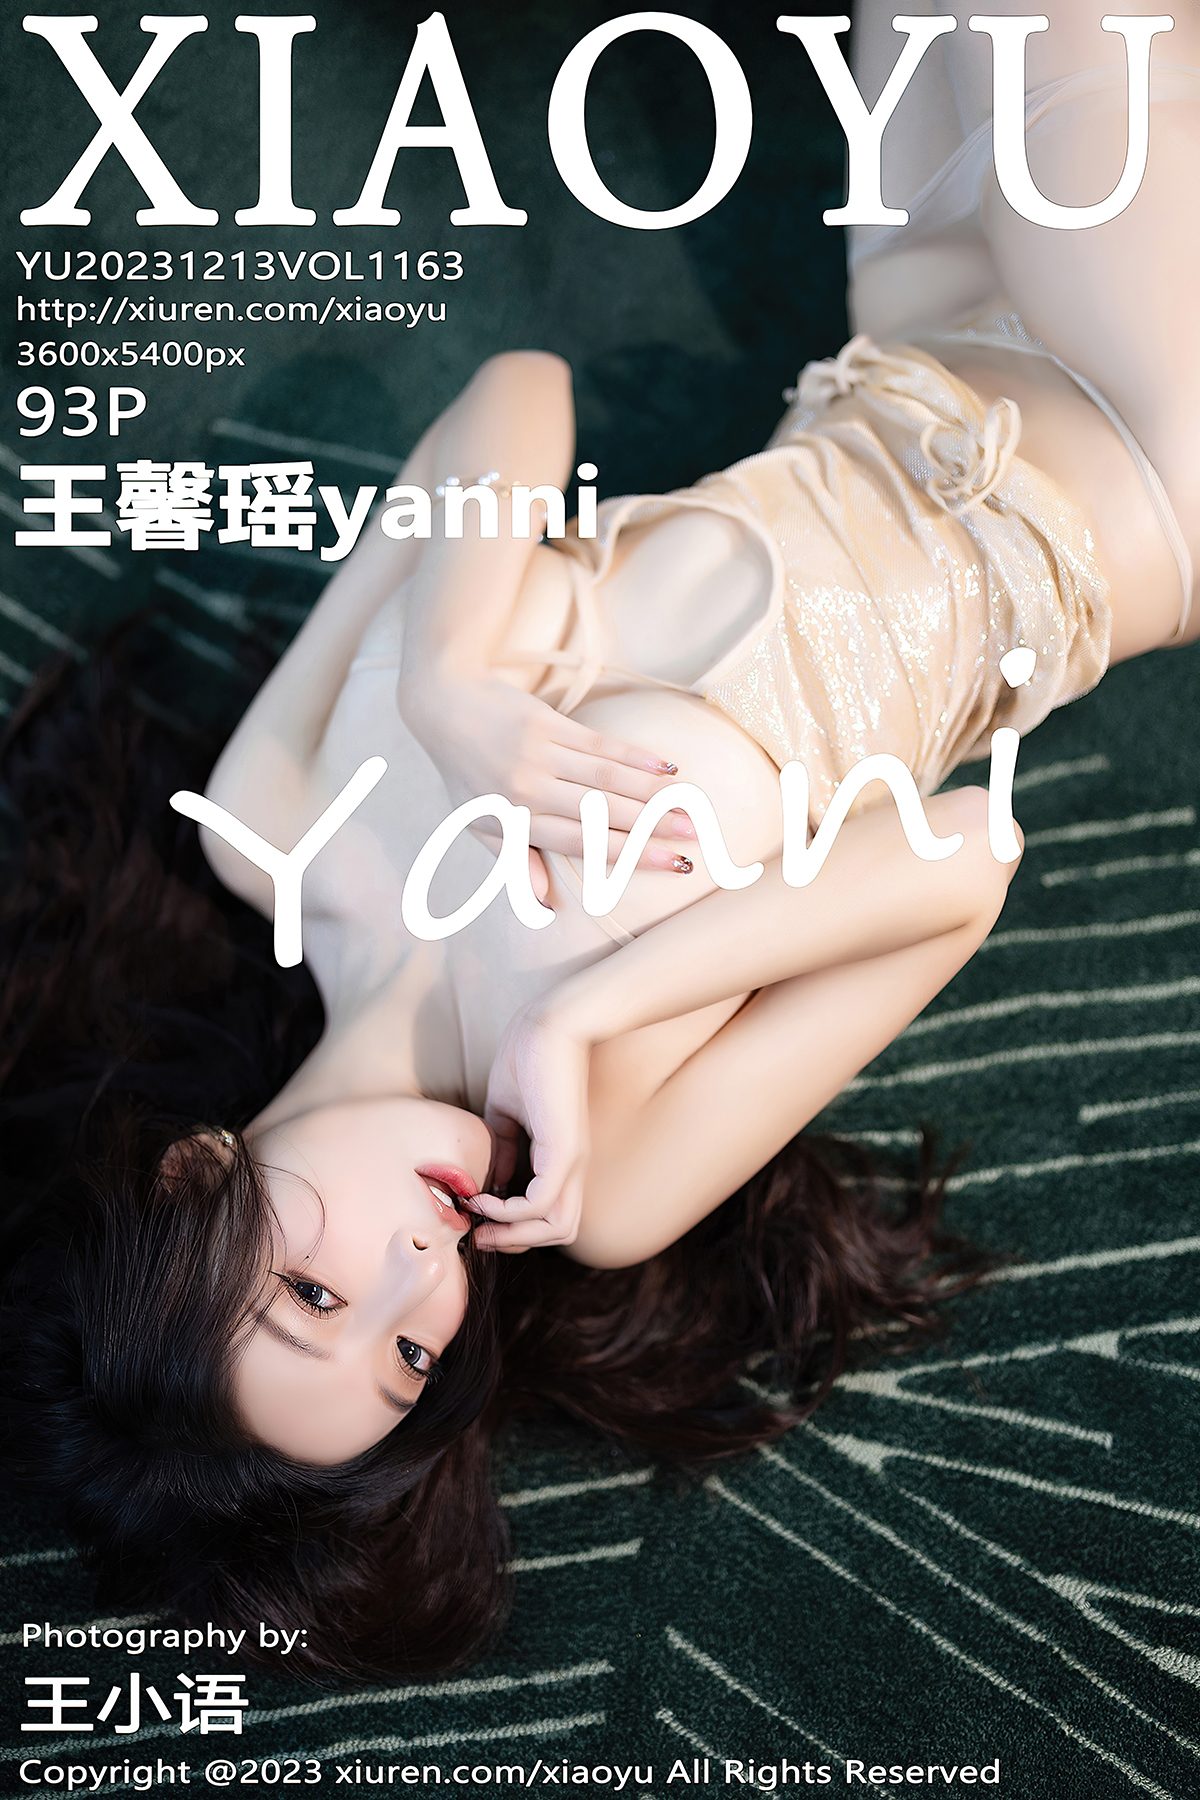 XiaoYu语画界 Vol 1163 Wang Xin Yao Yanni 0003 9011844159.jpg